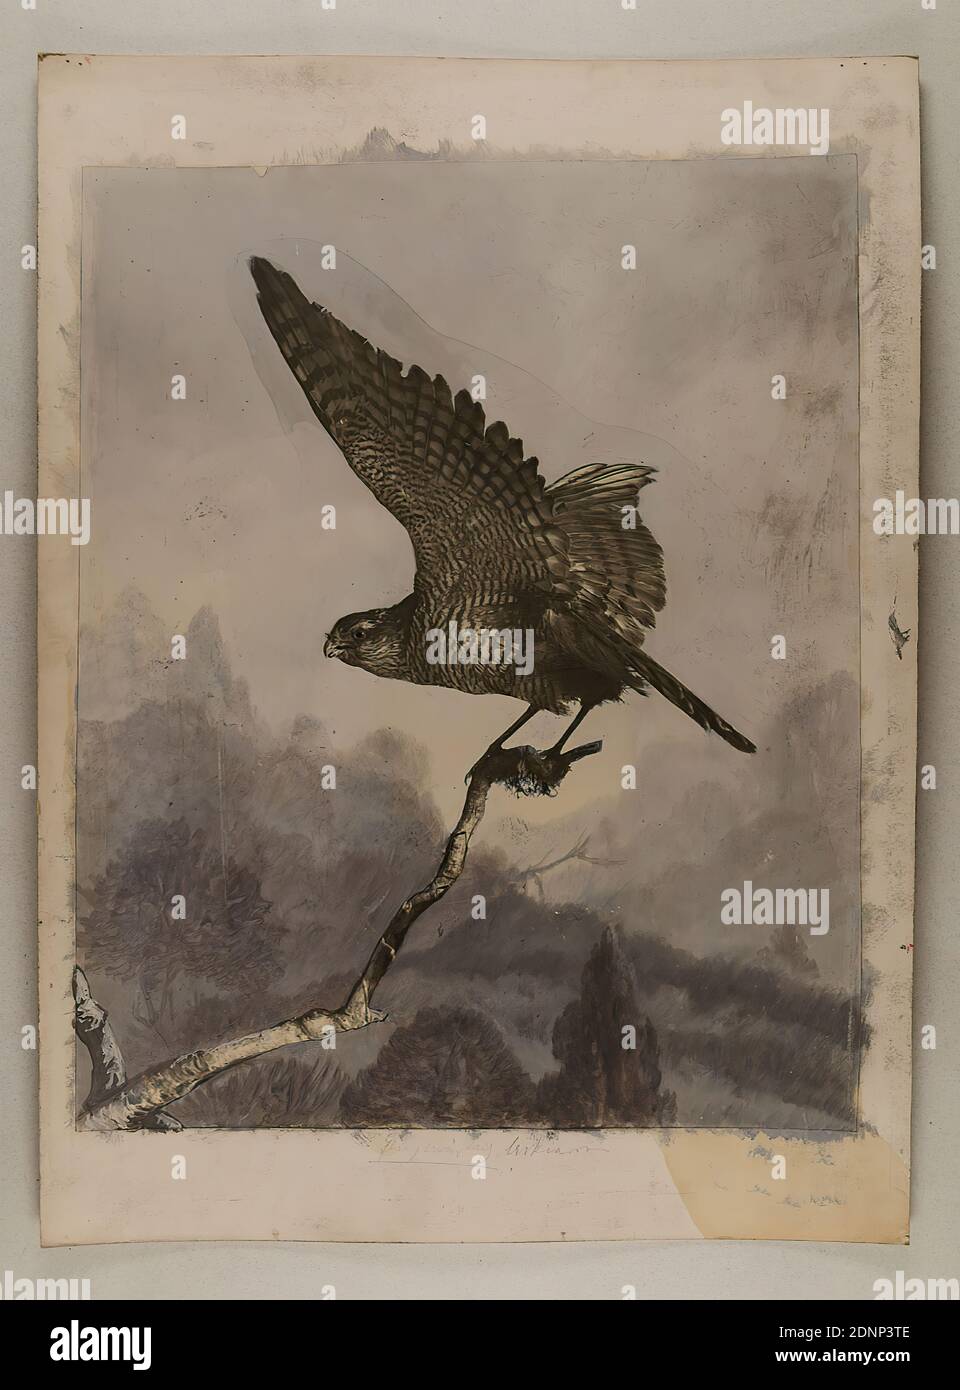 Hamann, sparrowwawk, carta in gelatina d'argento, processo positivo bianco e nero, dipinta, dimensioni immagine: Altezza: 41.00 cm; larghezza: 32.80 cm, fotografia animale, uccelli Foto Stock